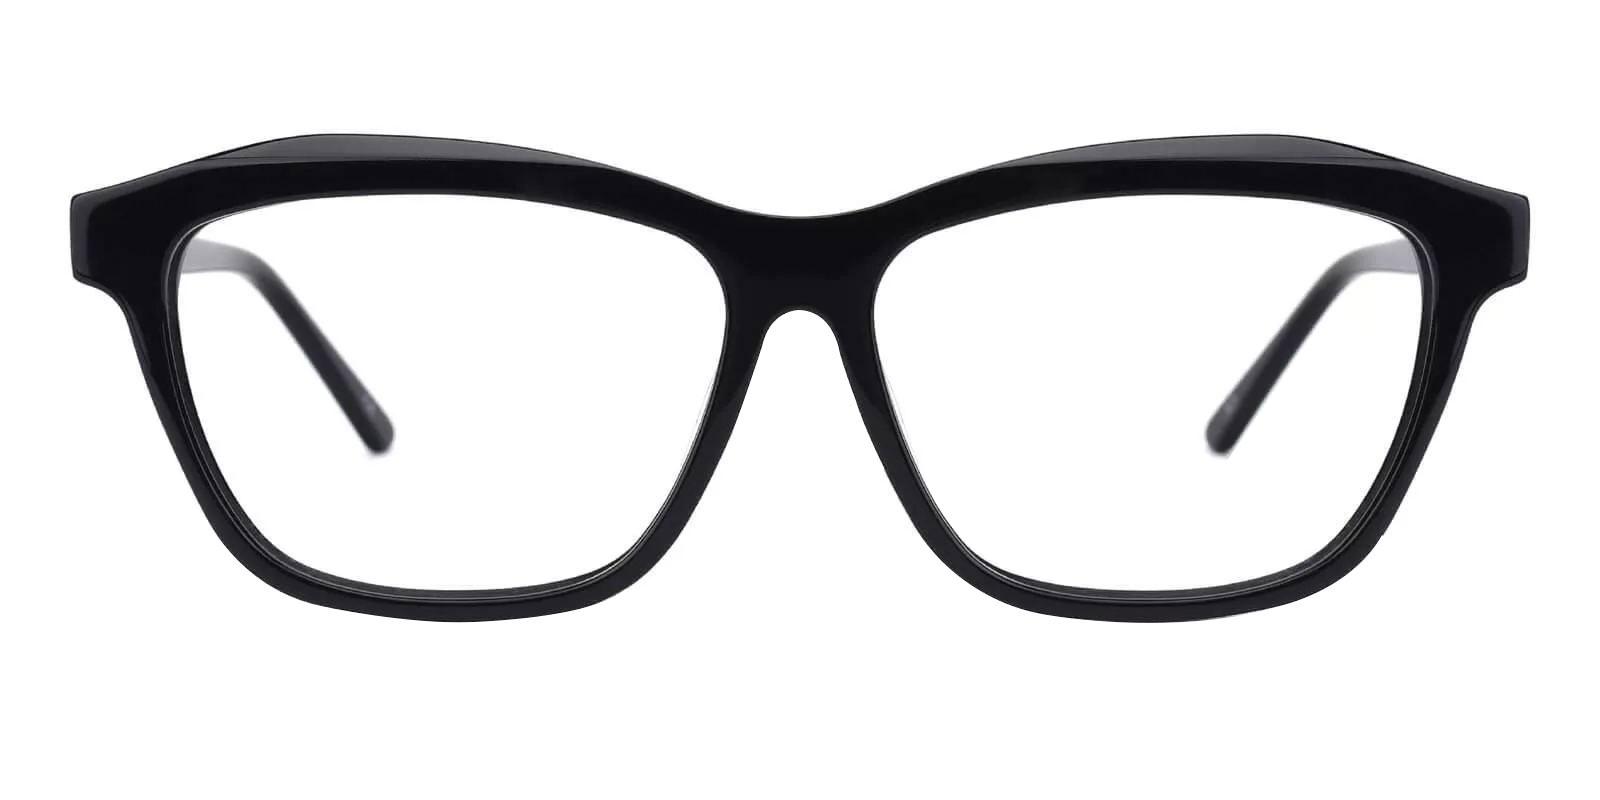 Sonia Black Acetate SpringHinges , UniversalBridgeFit , Eyeglasses Frames from ABBE Glasses